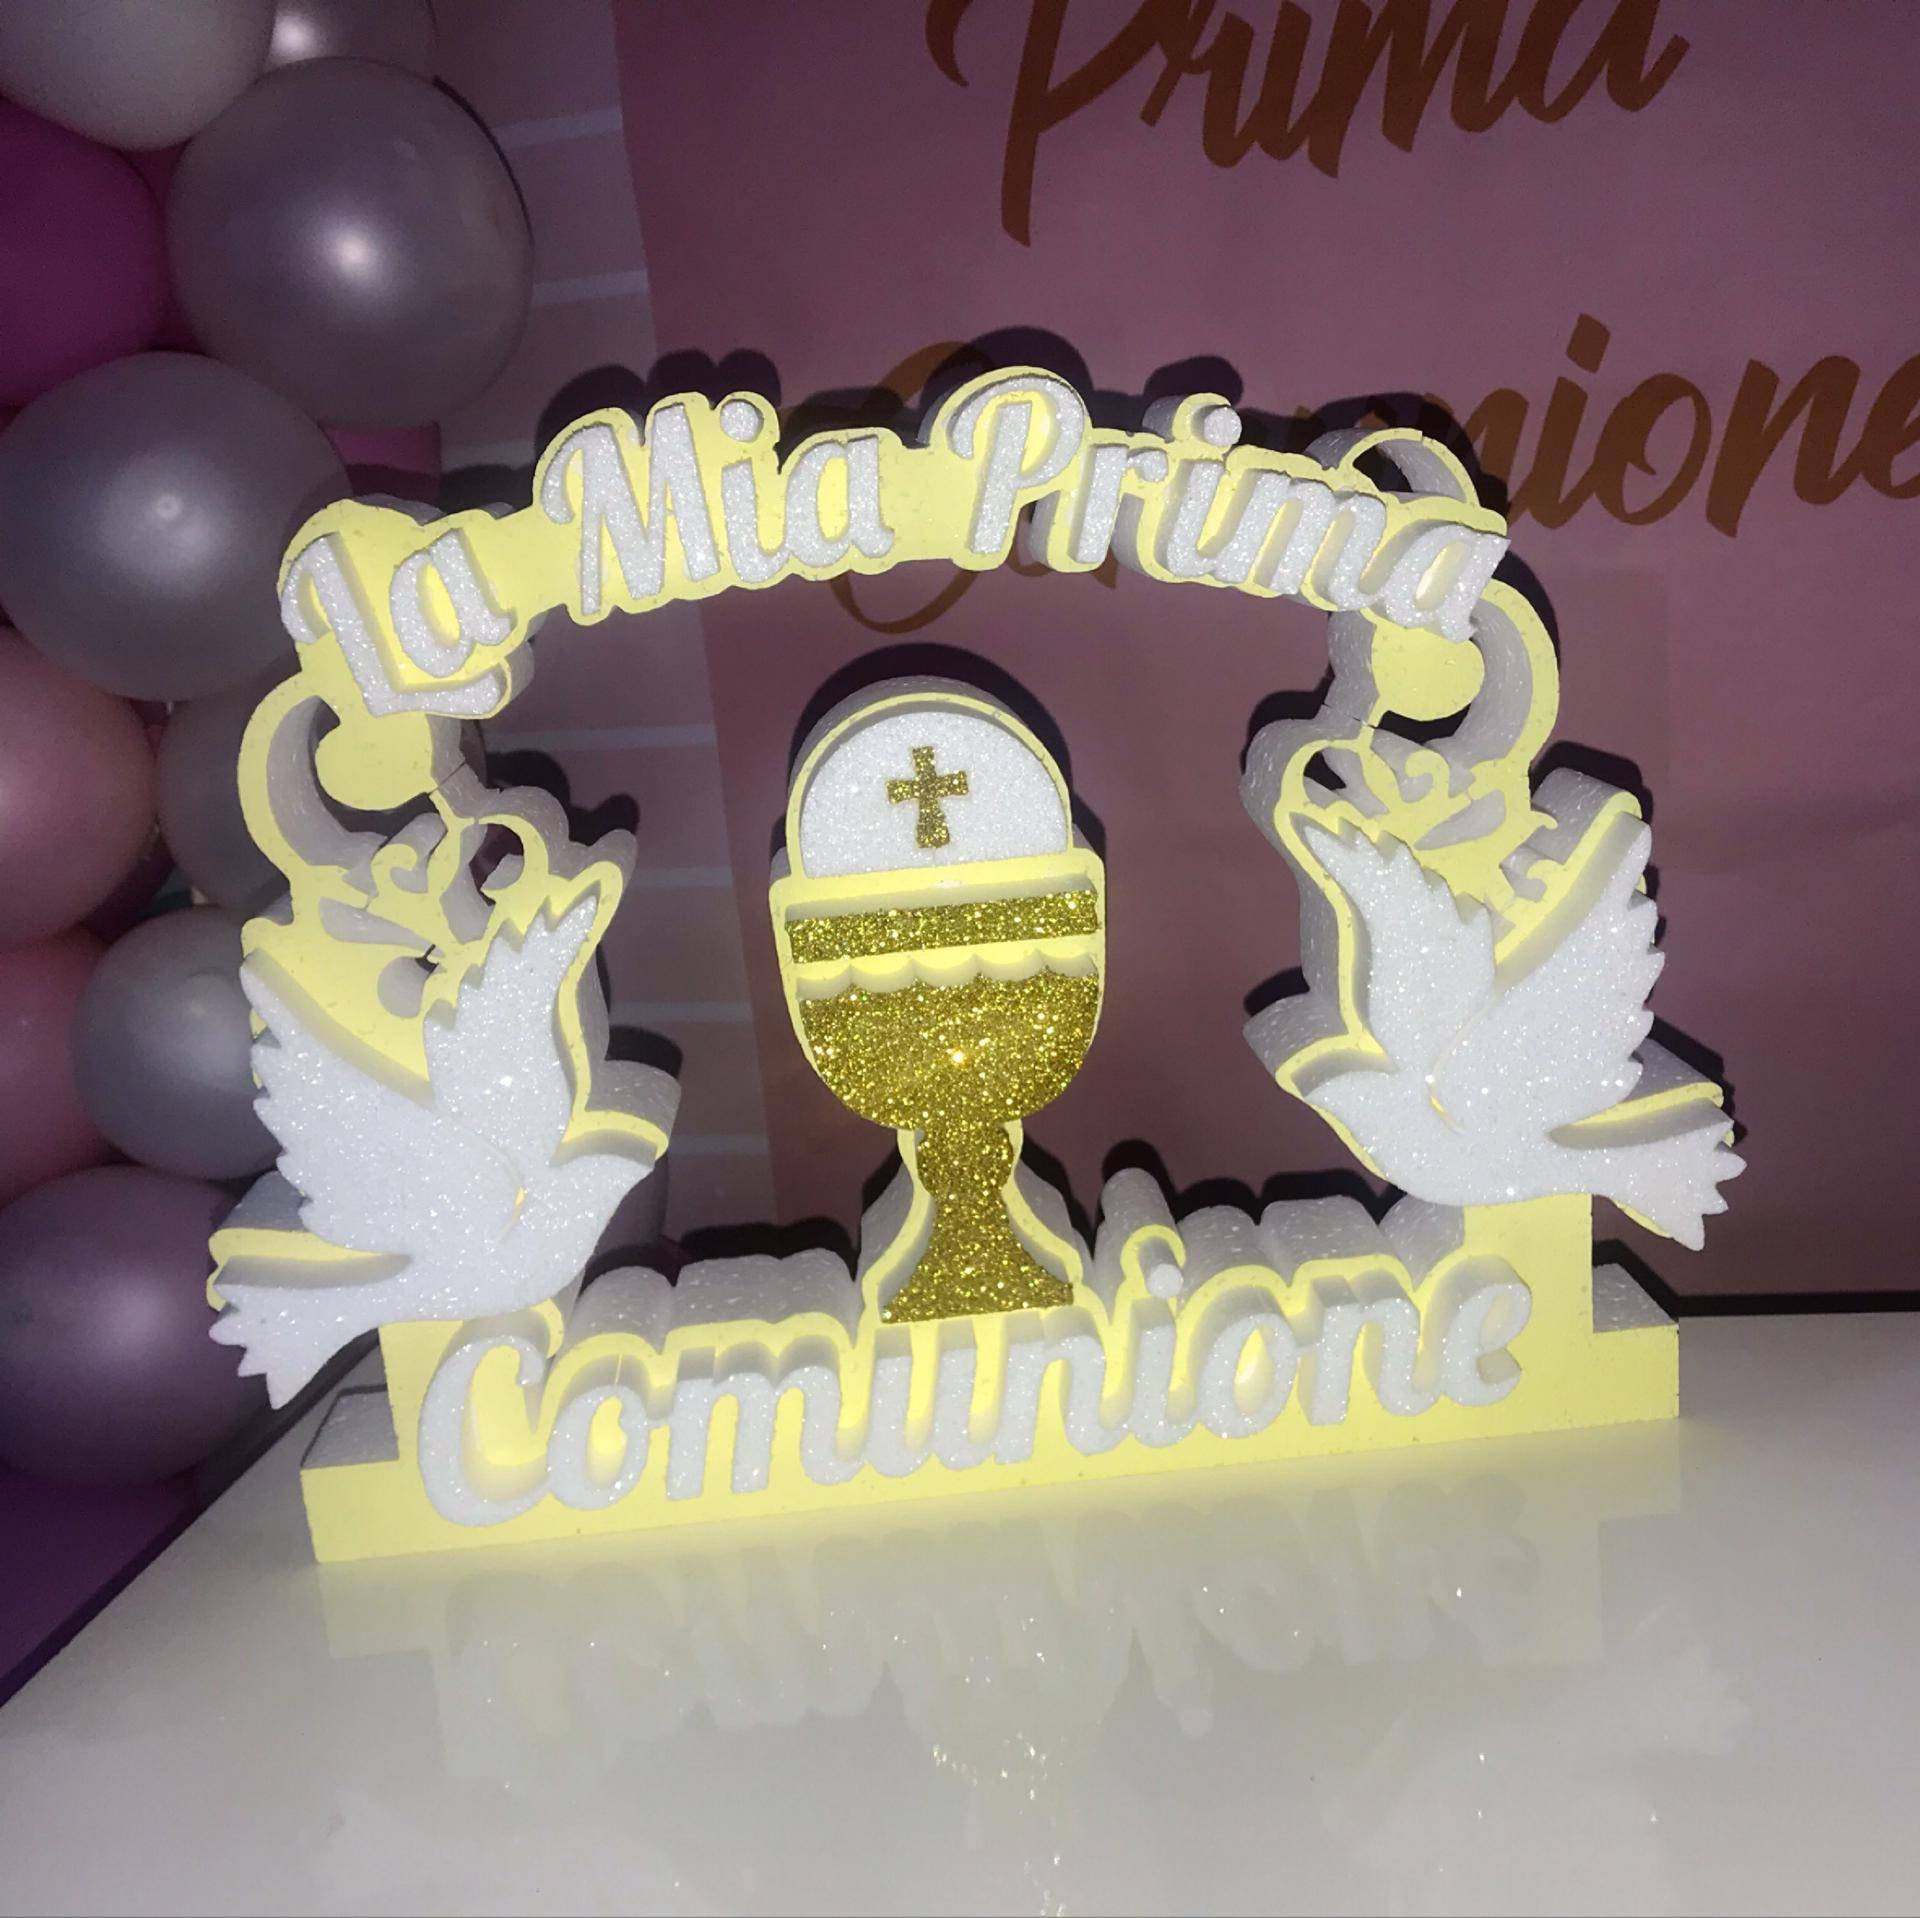 Elegante Decorazione Prima Comunione in Polistirolo 40cm x 5cm Colombe  Glitterate e Coppa Comunione Oro -  Italia